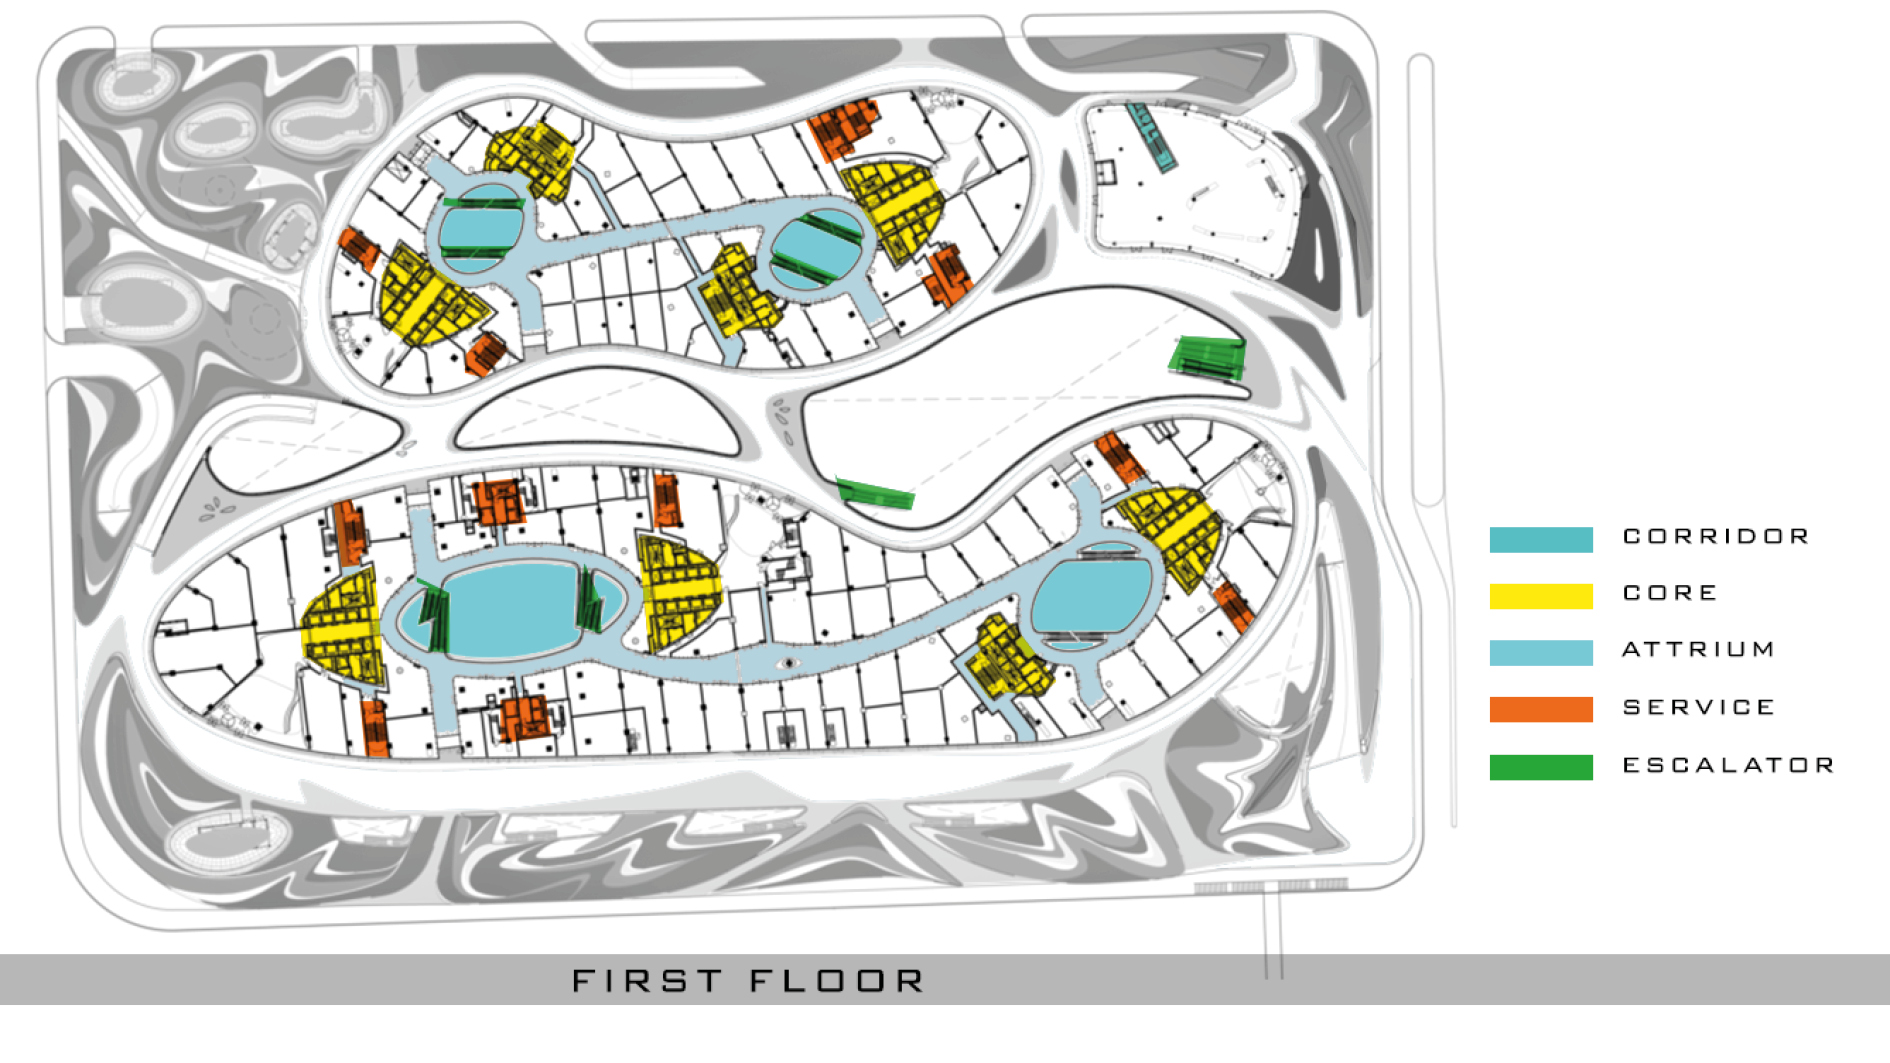 Galaxy soho floor plan